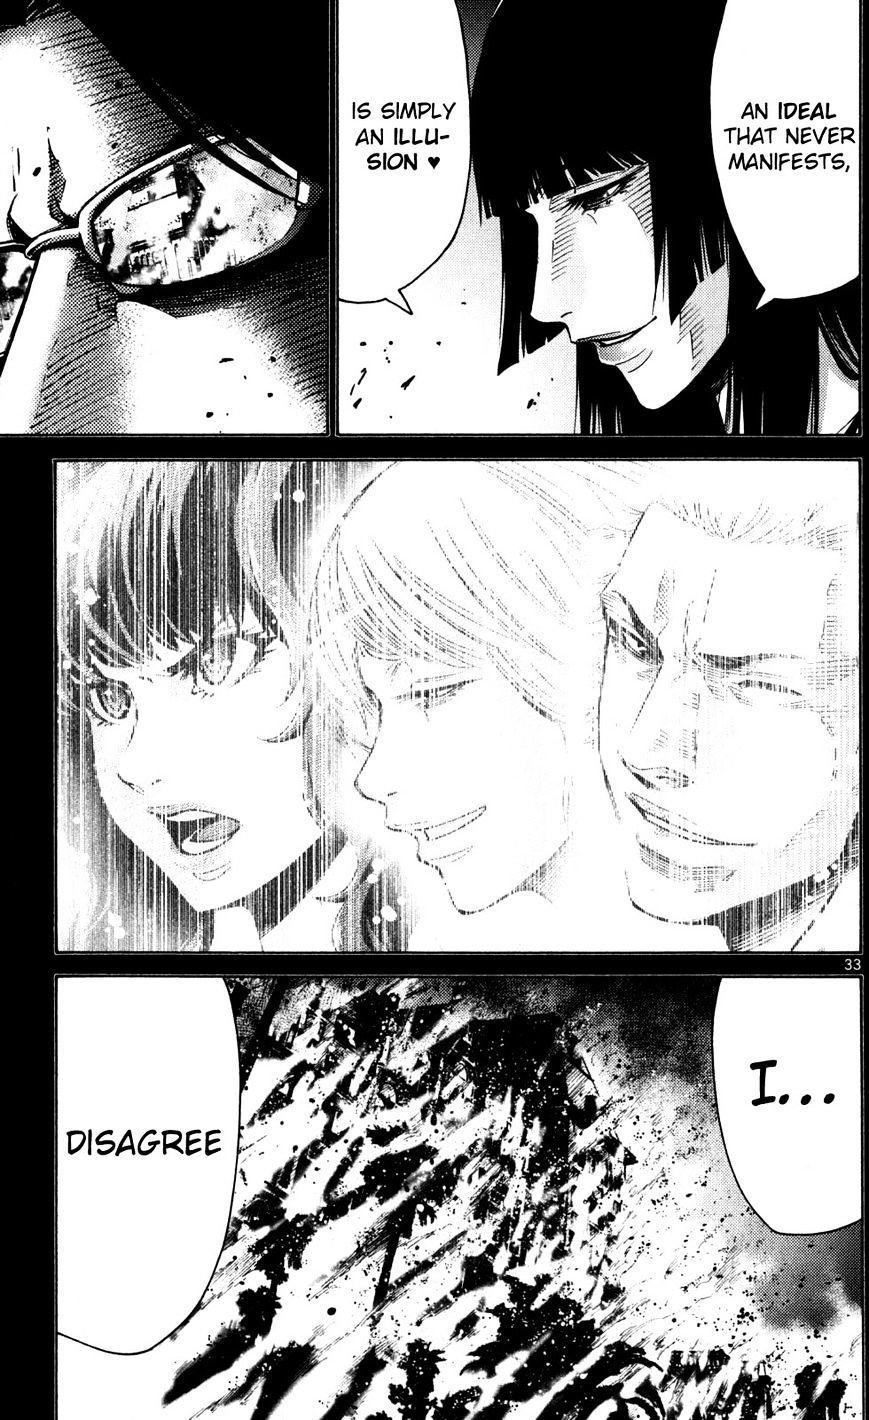 Imawa No Kuni No Alice Chapter 51.5 : Side Story 6 - King Of Diamonds (5) page 33 - Mangakakalot